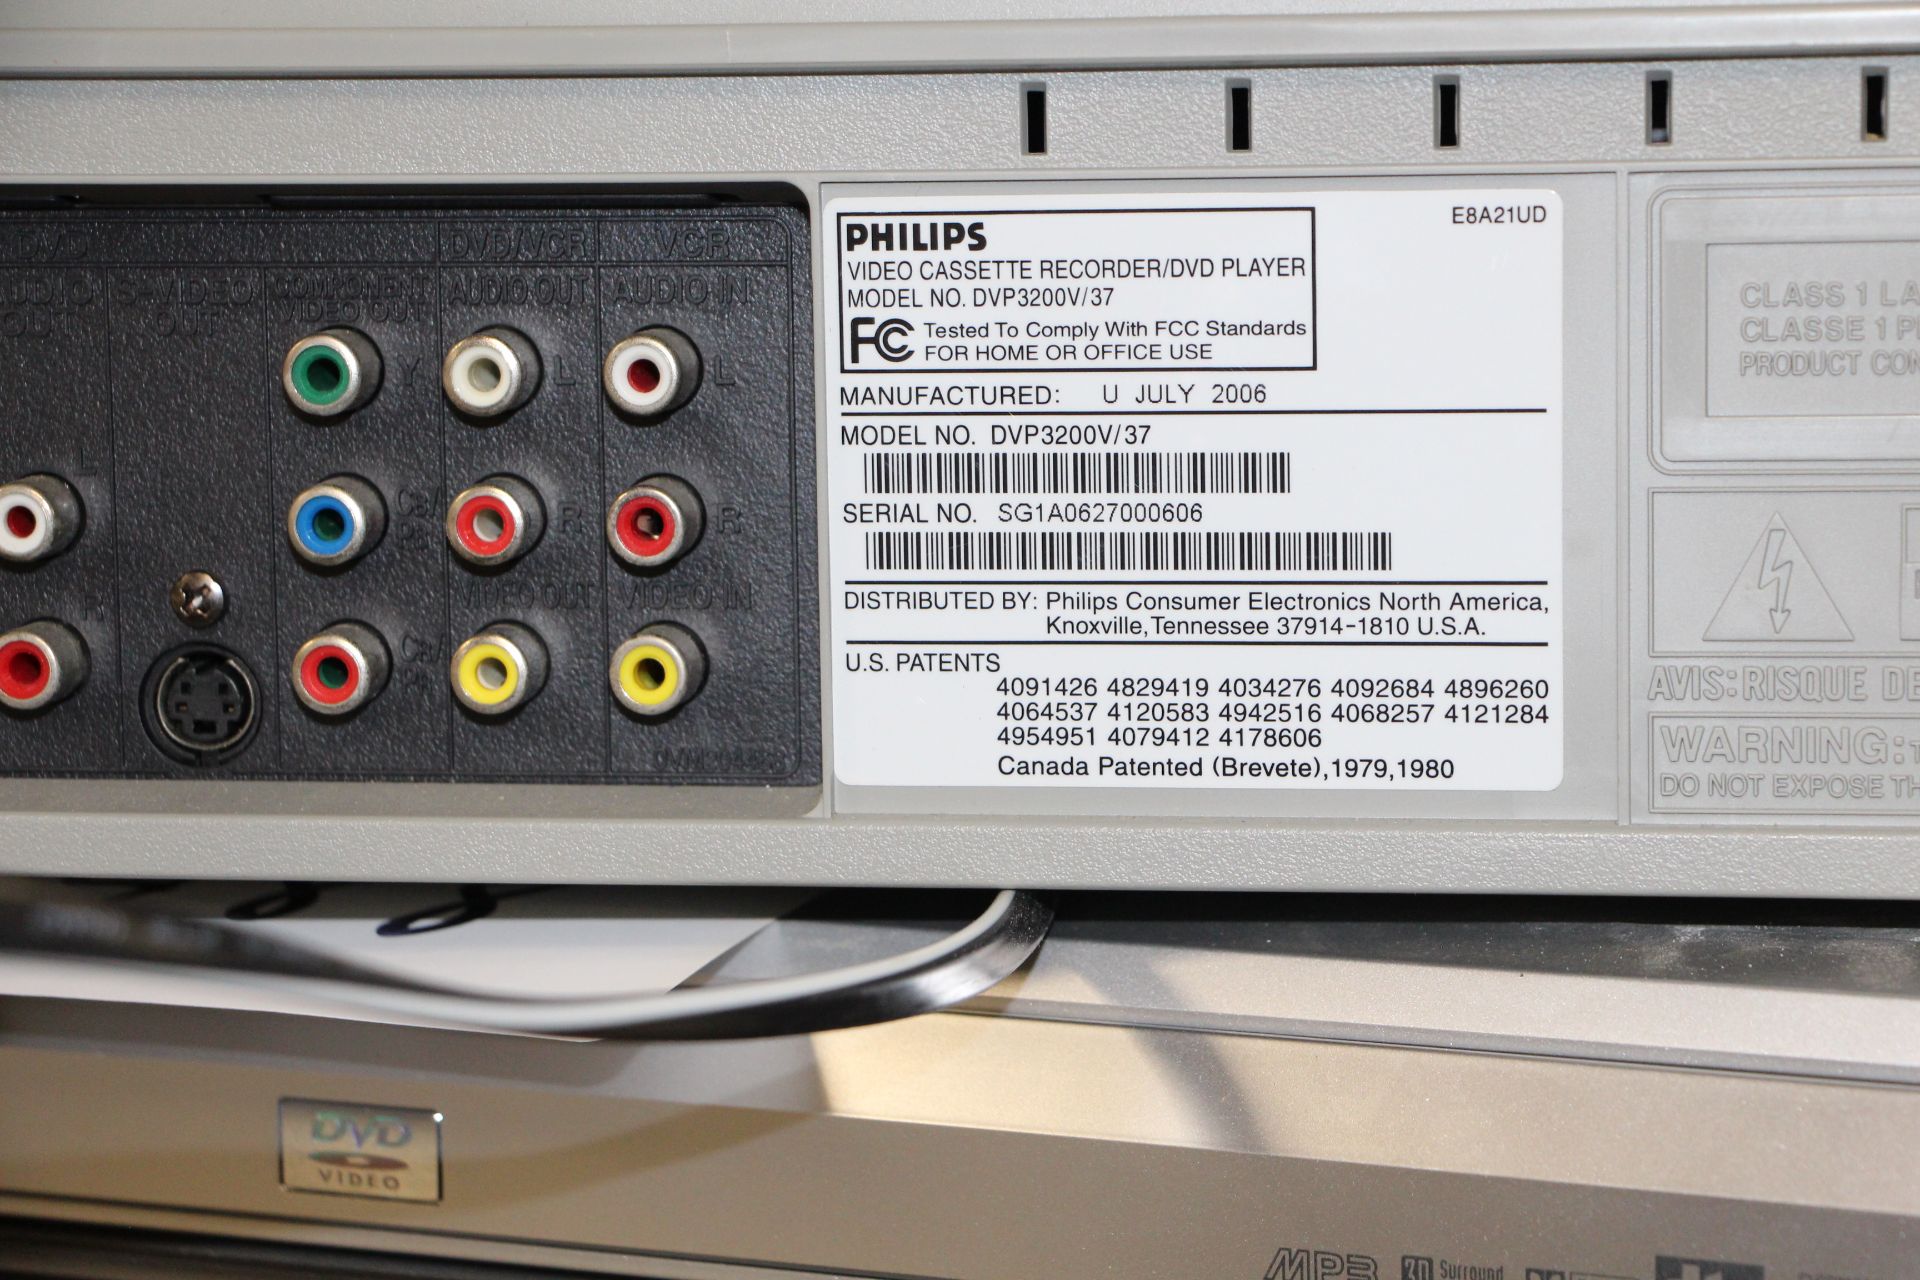 Philips model DVP3200V/37 Video cassette recorder/DVD player - Image 2 of 2